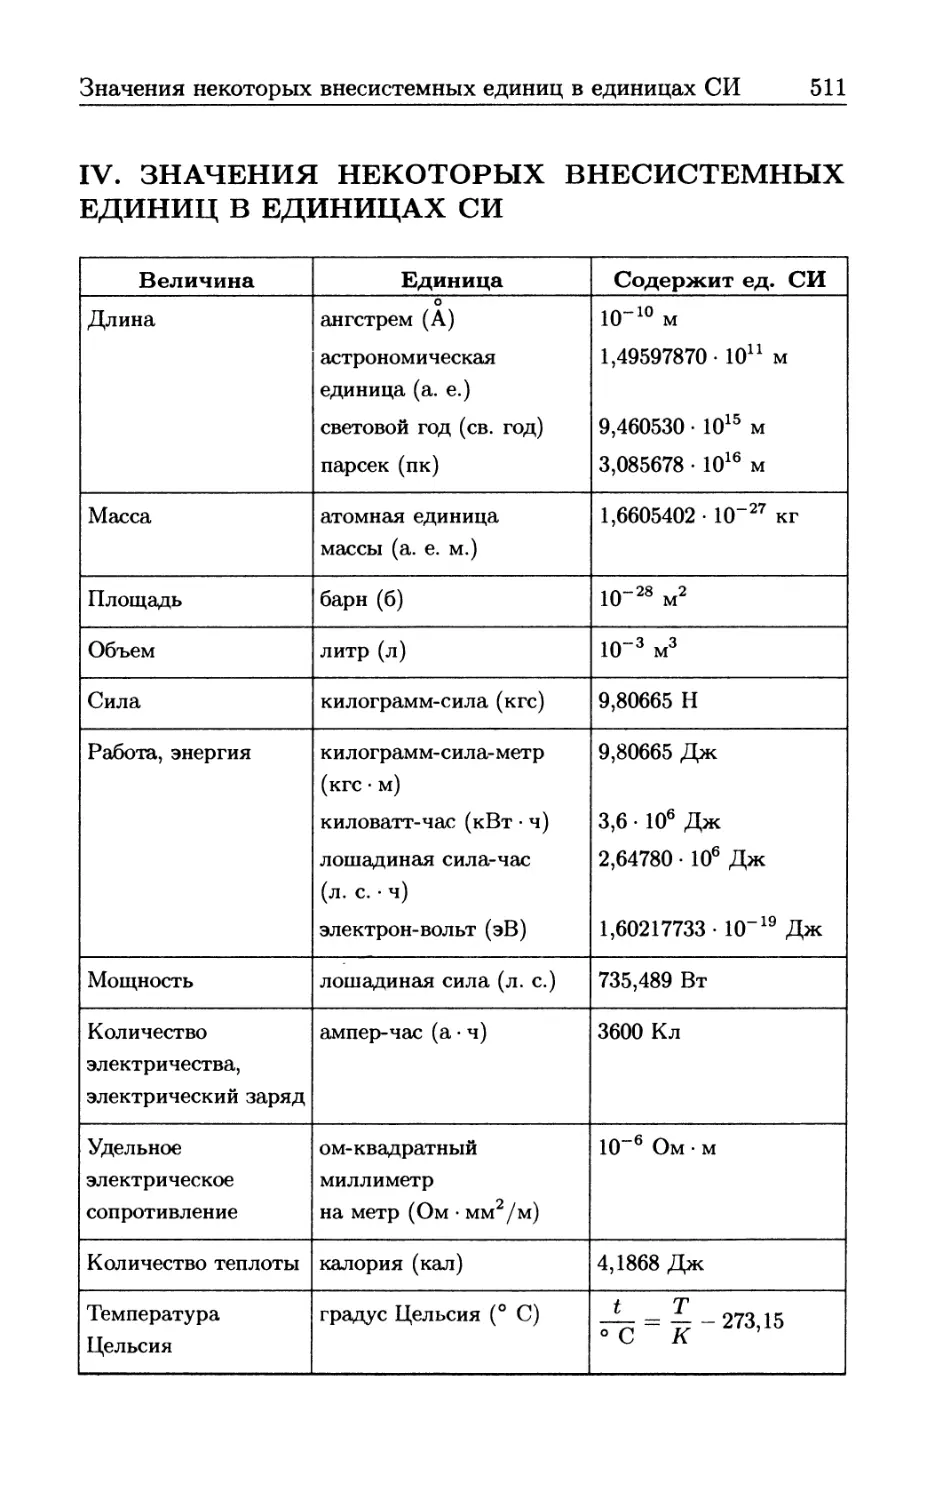 IV Значения некоторых внесистемных единиц в единицах СИ